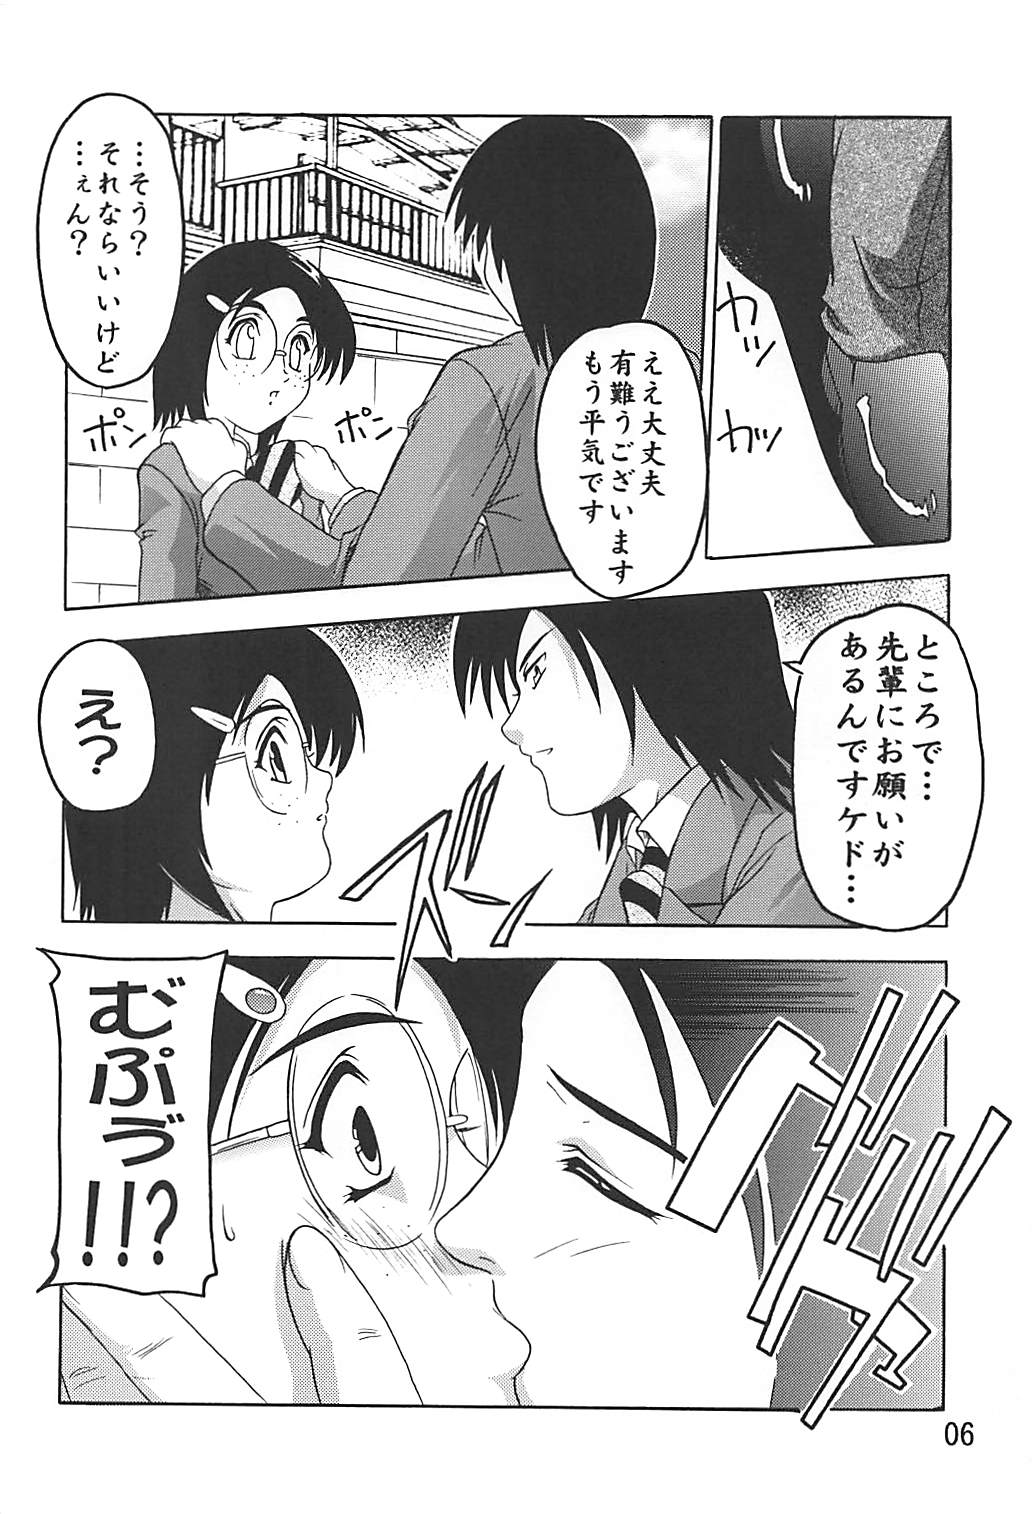 [Studio Q (Natsuka Q-ya)] PUNI CURE 2 (Futari wa Precure) [Digital] page 5 full